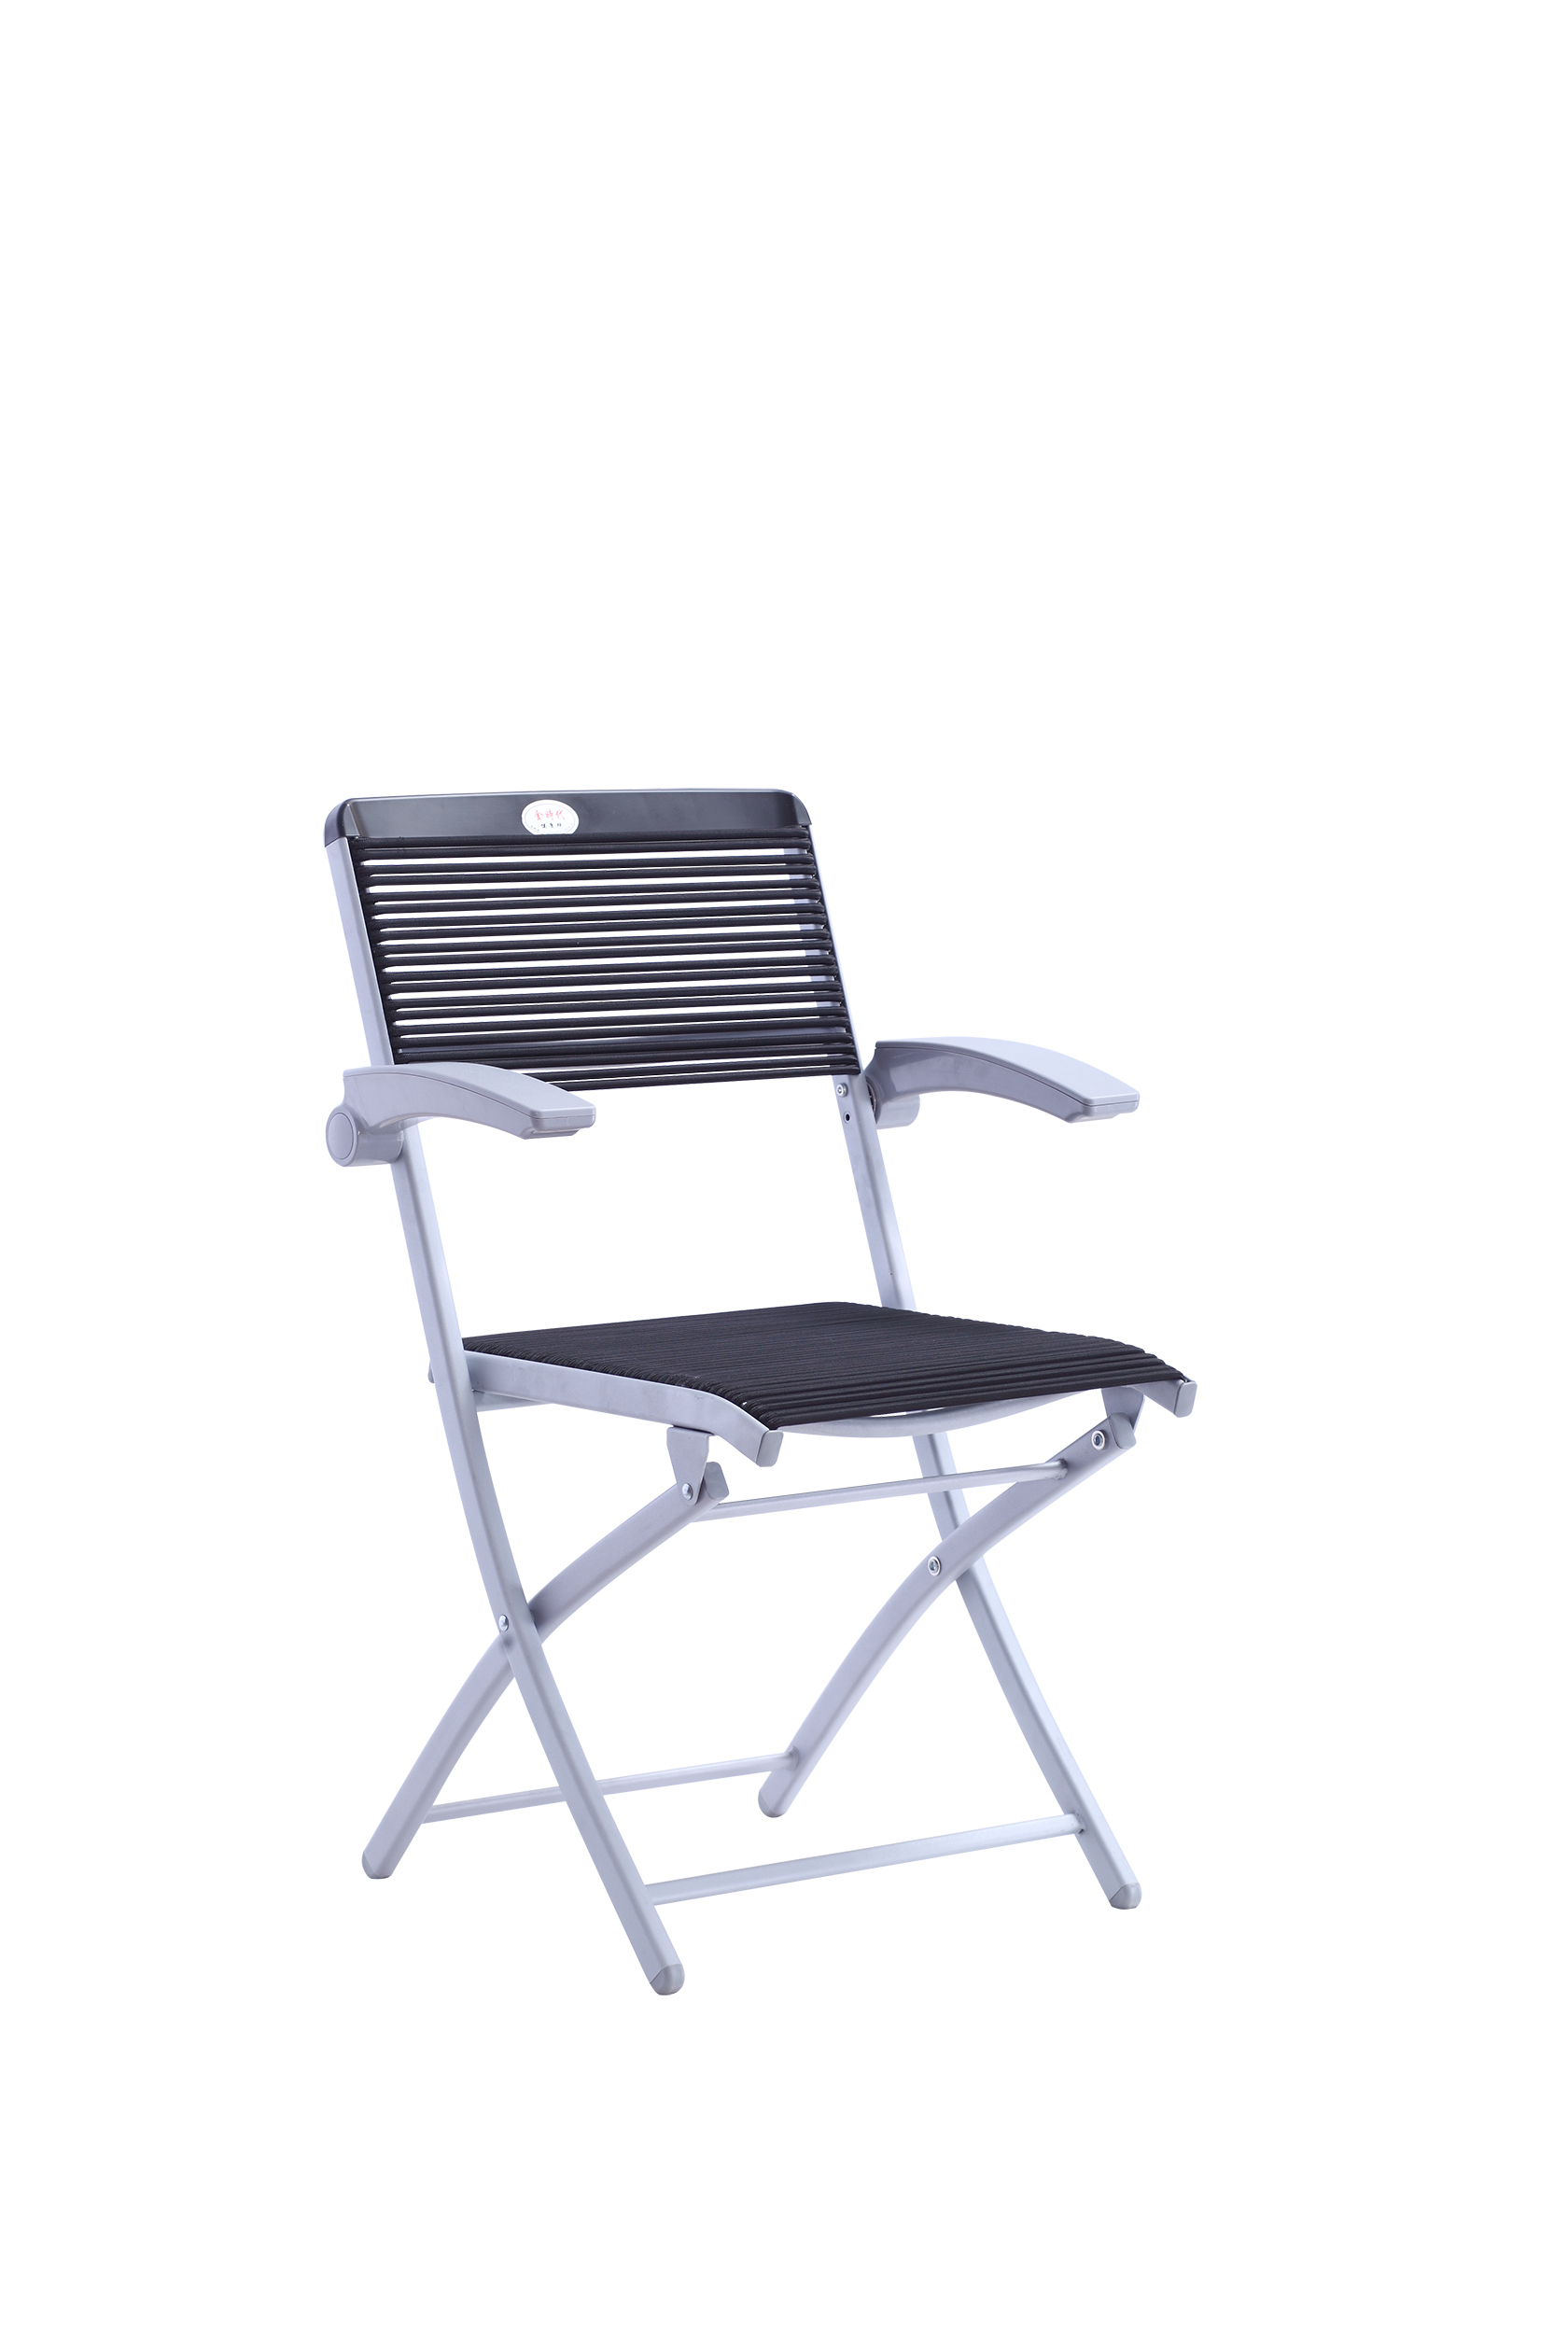 YG7032-3A特价健康椅办公椅 家用餐桌椅户外折叠椅可定制